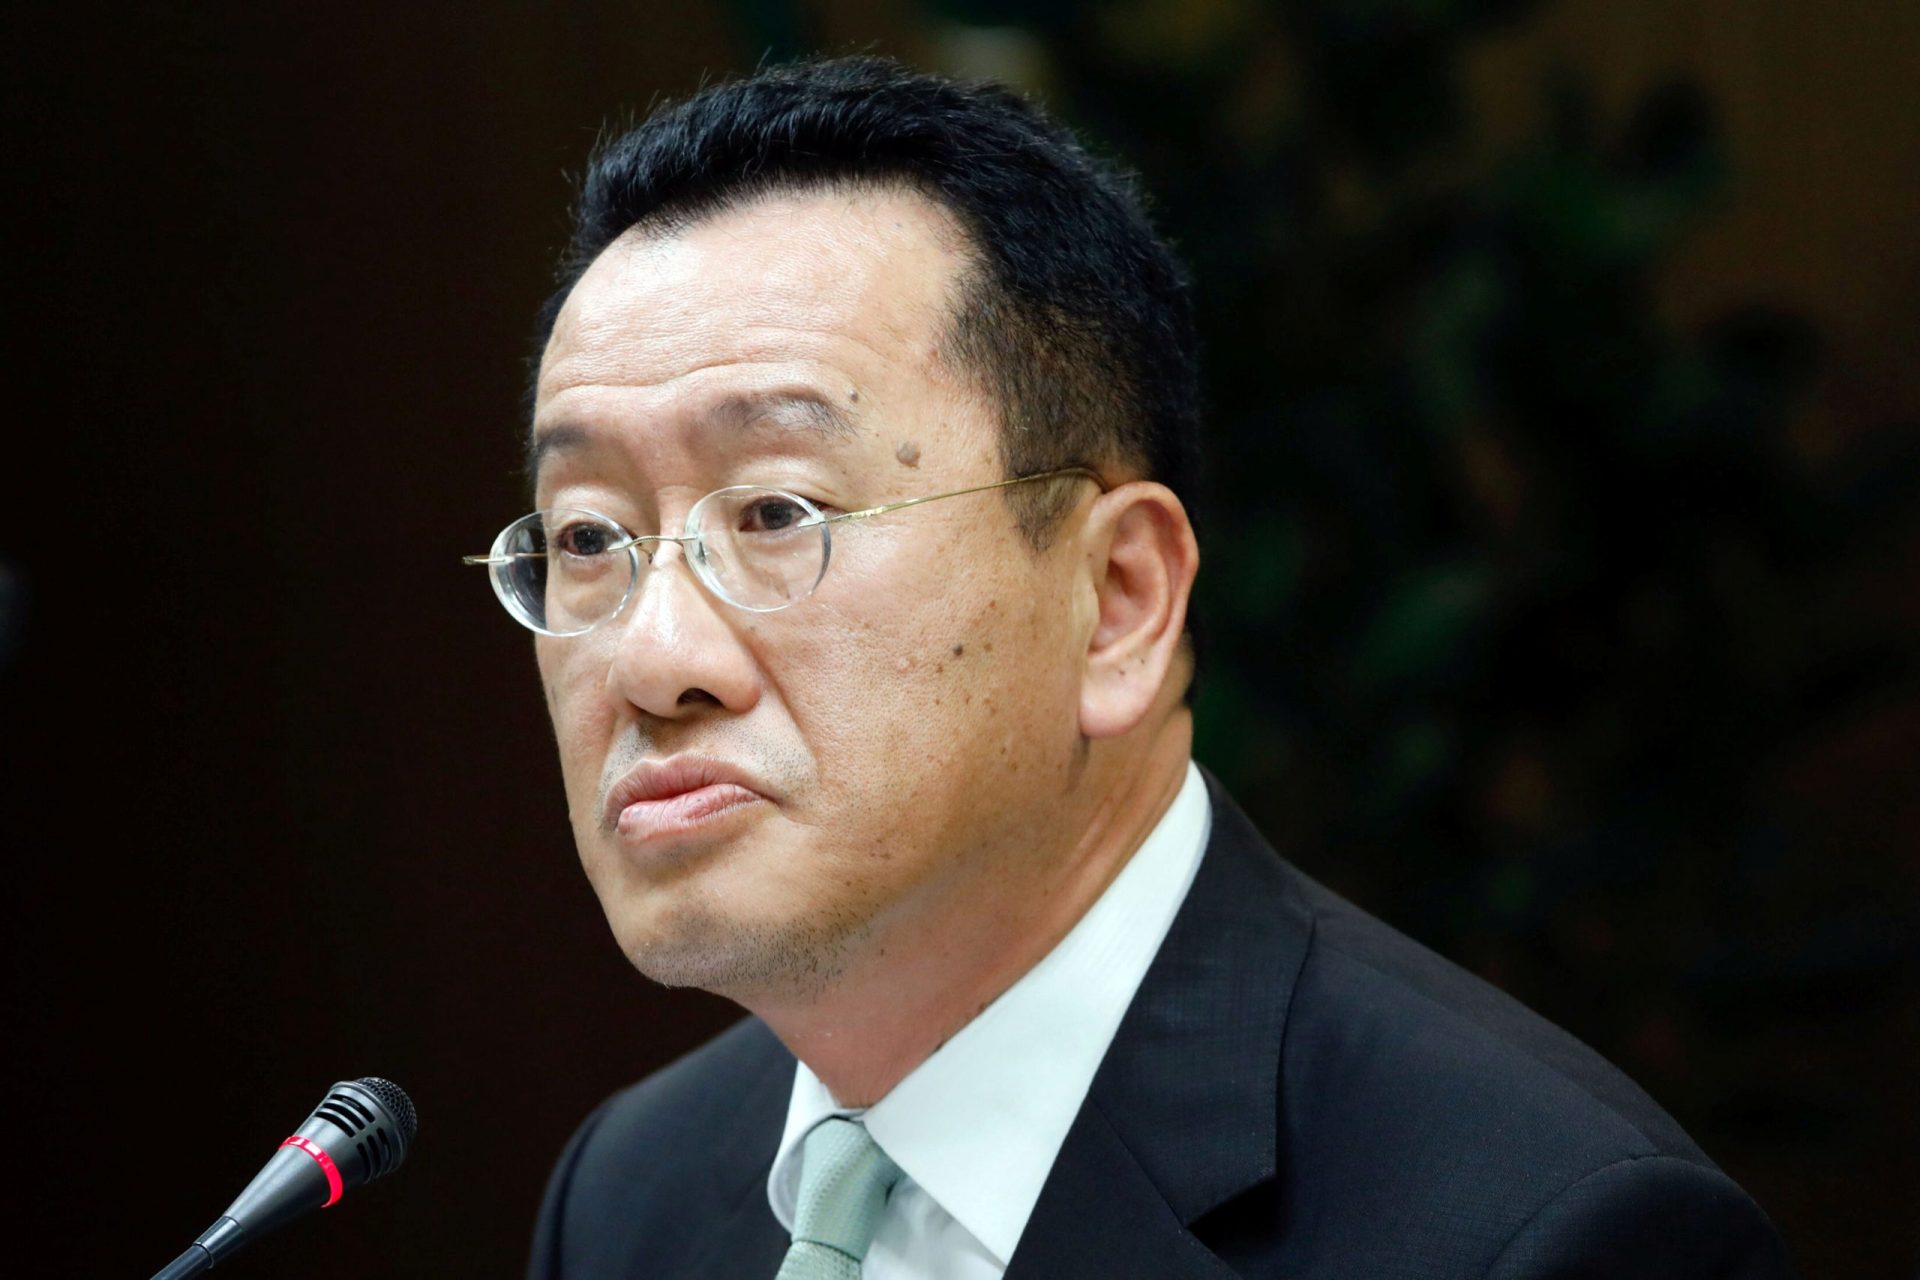 Enquête chinoise sur Foxconn politique selon chef sécurité Taïwan